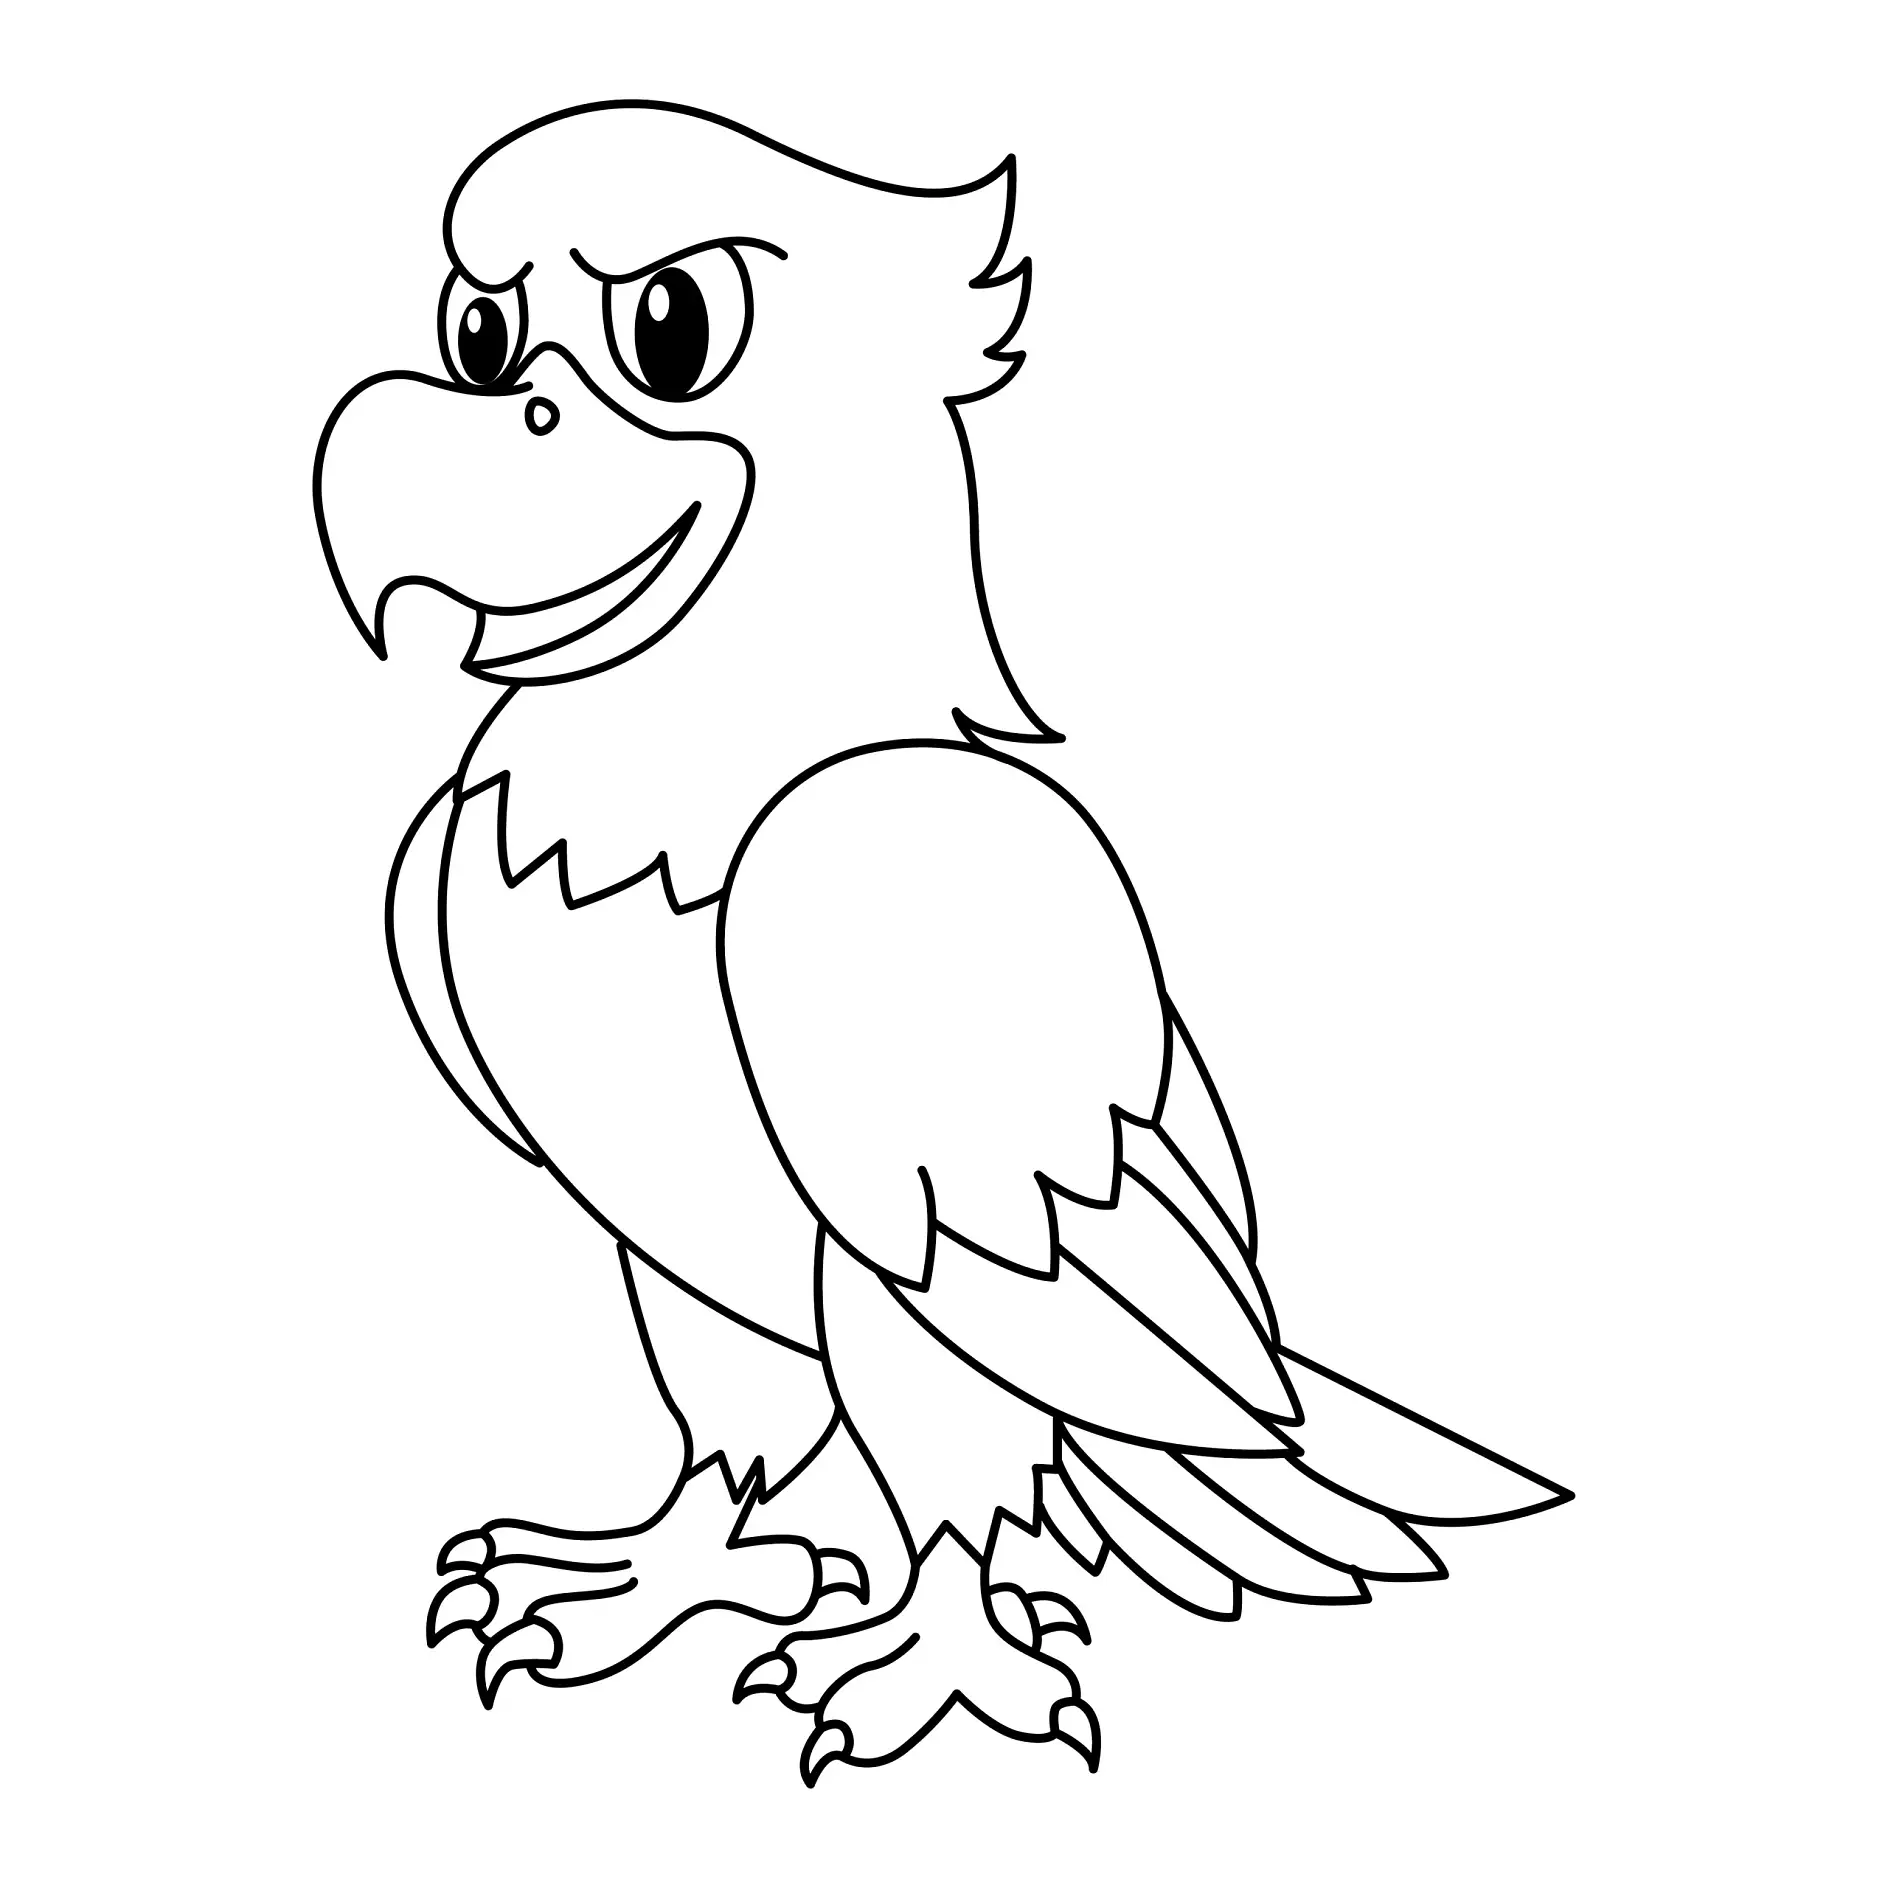 Ausmalbild lächelnder Adler mit kräftigen Krallen und scharfem Blick